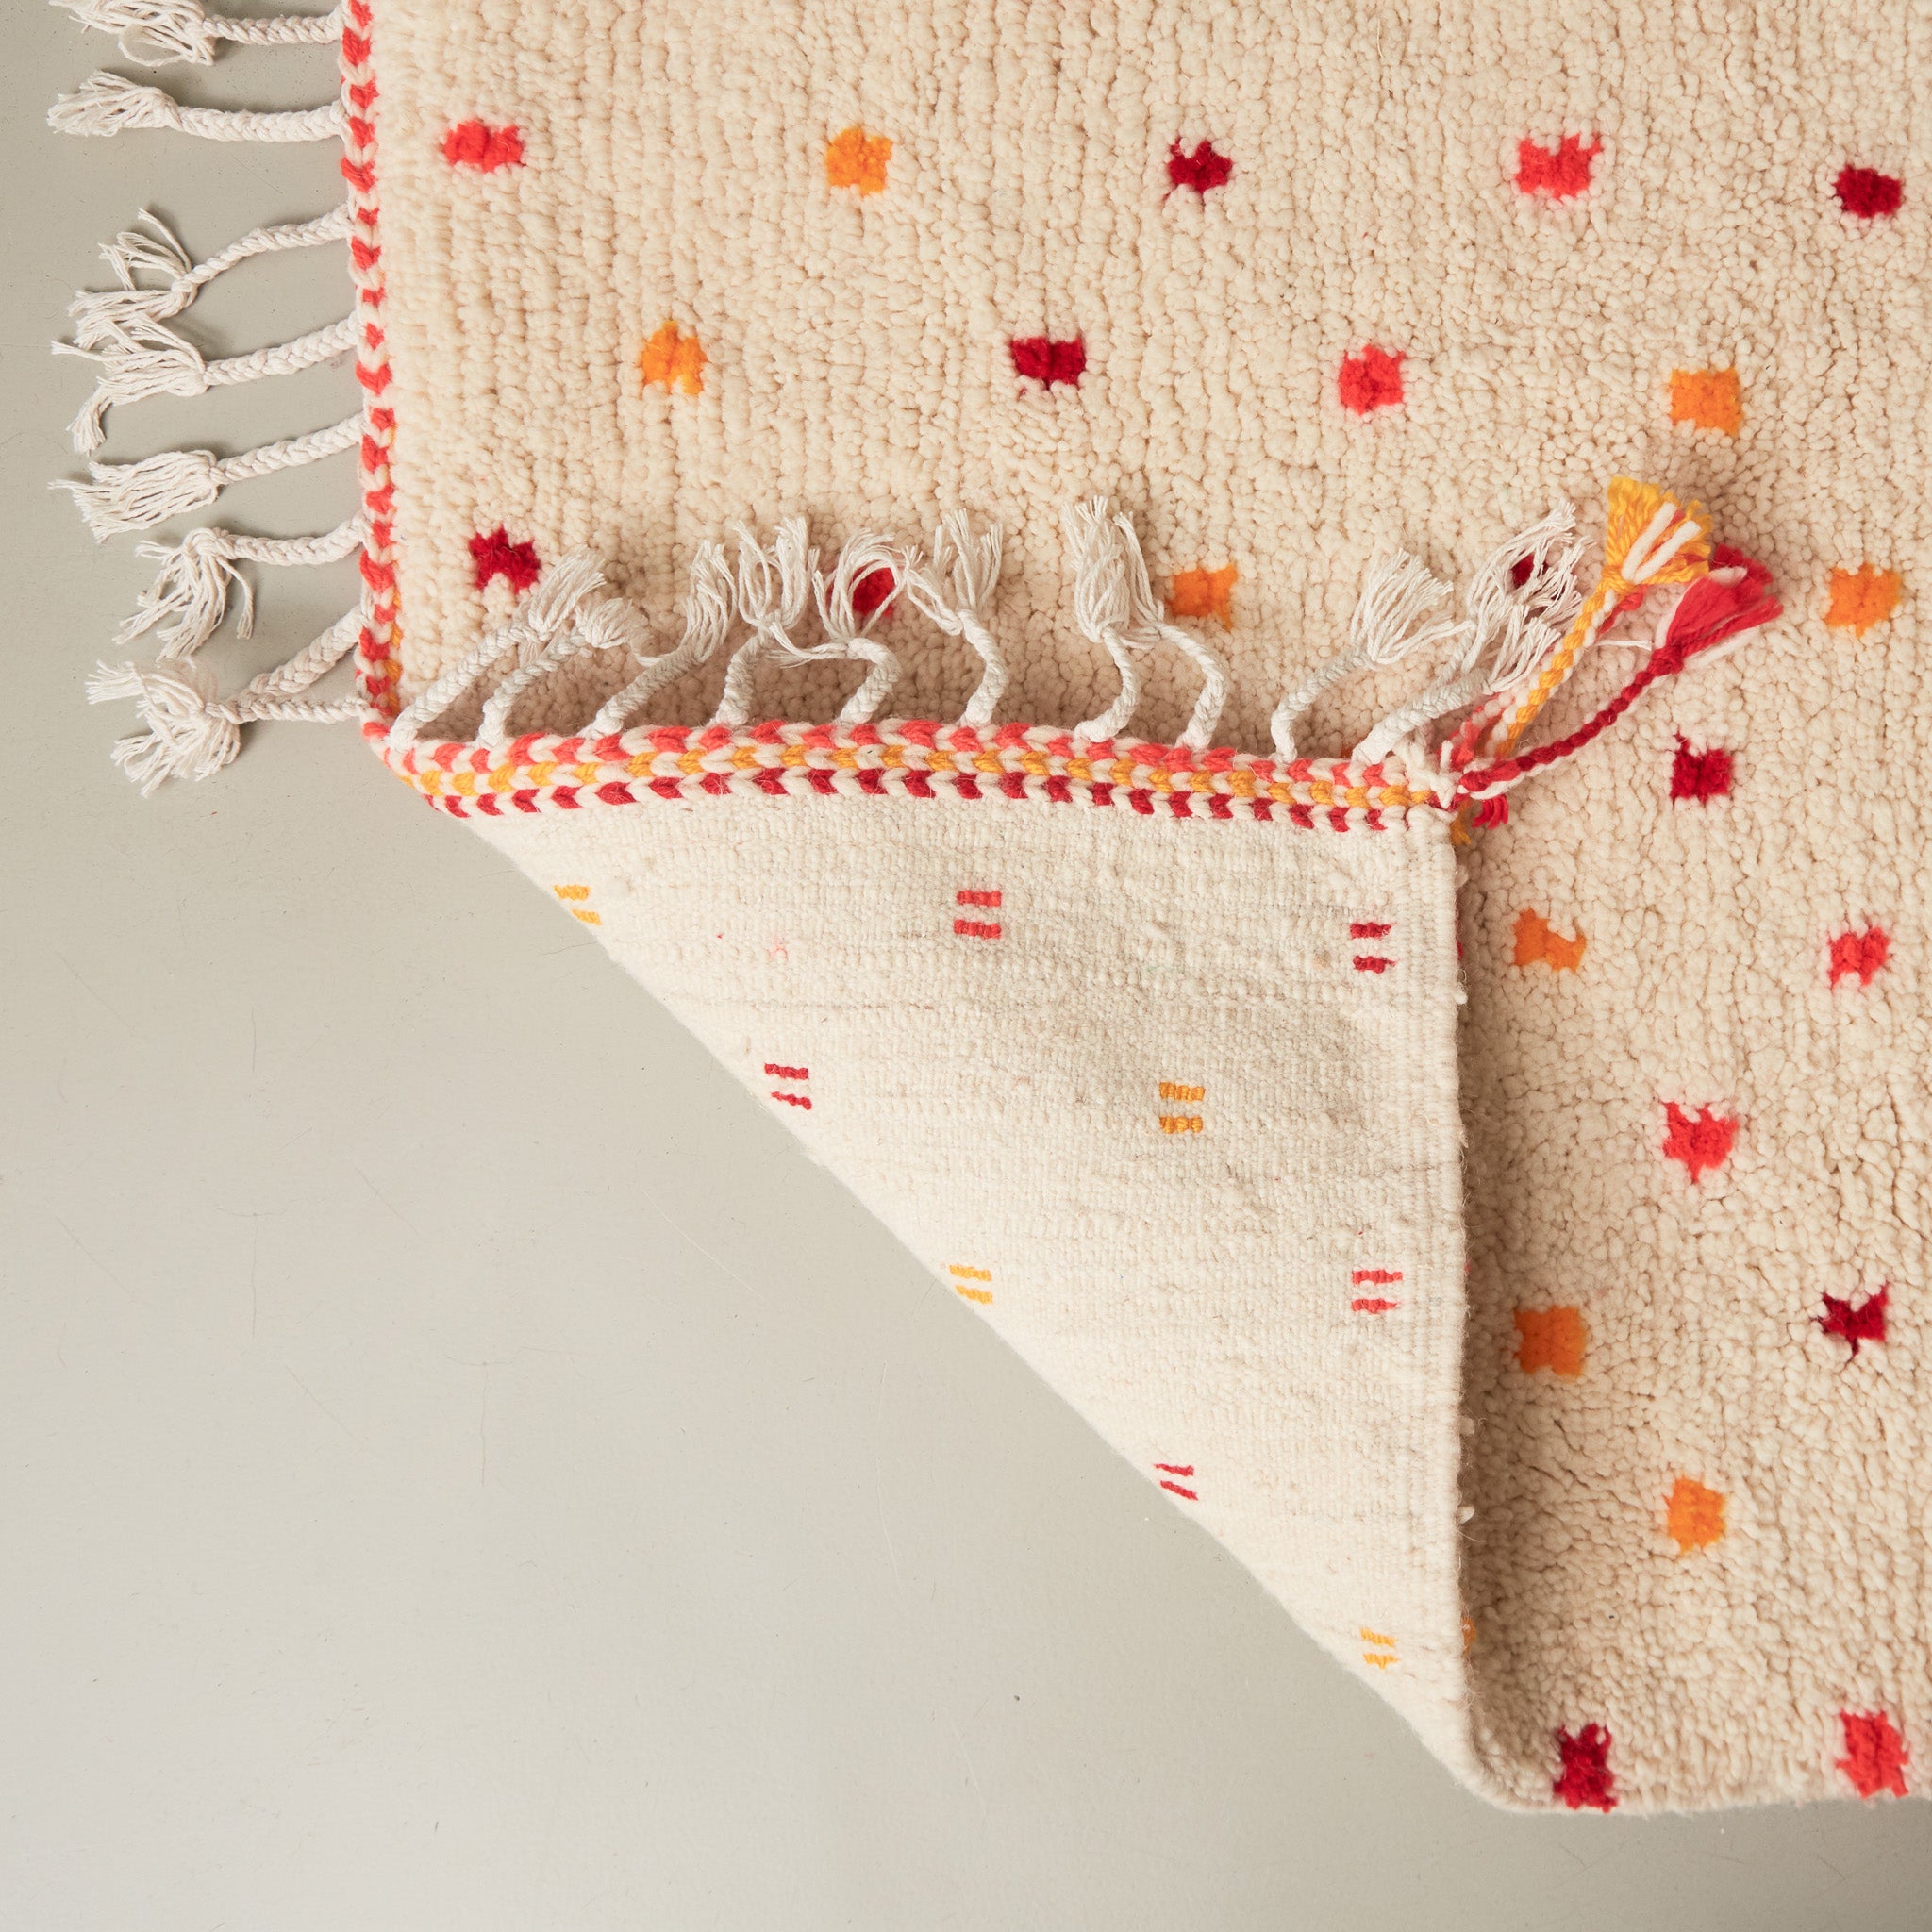 dettaglio del retro di un tappeto azilal in lana chiara con pois gialli rossi arancioni